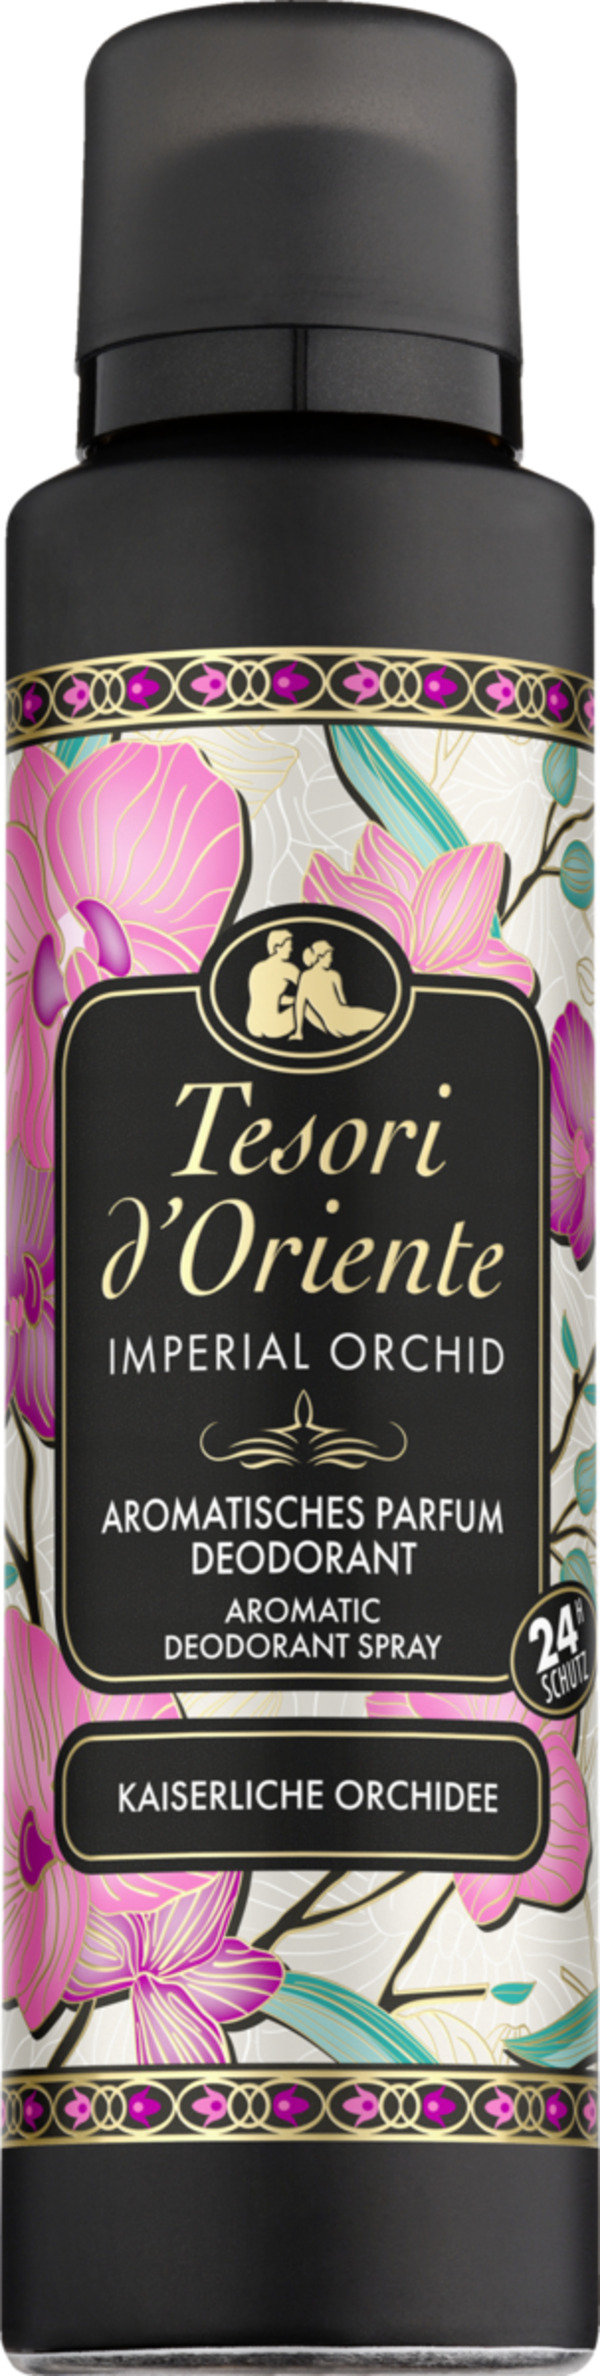 Bild 1 von Tesori d'Oriente Parfum Deodorant Spray Kaiserliche Orchidee, 150 ml